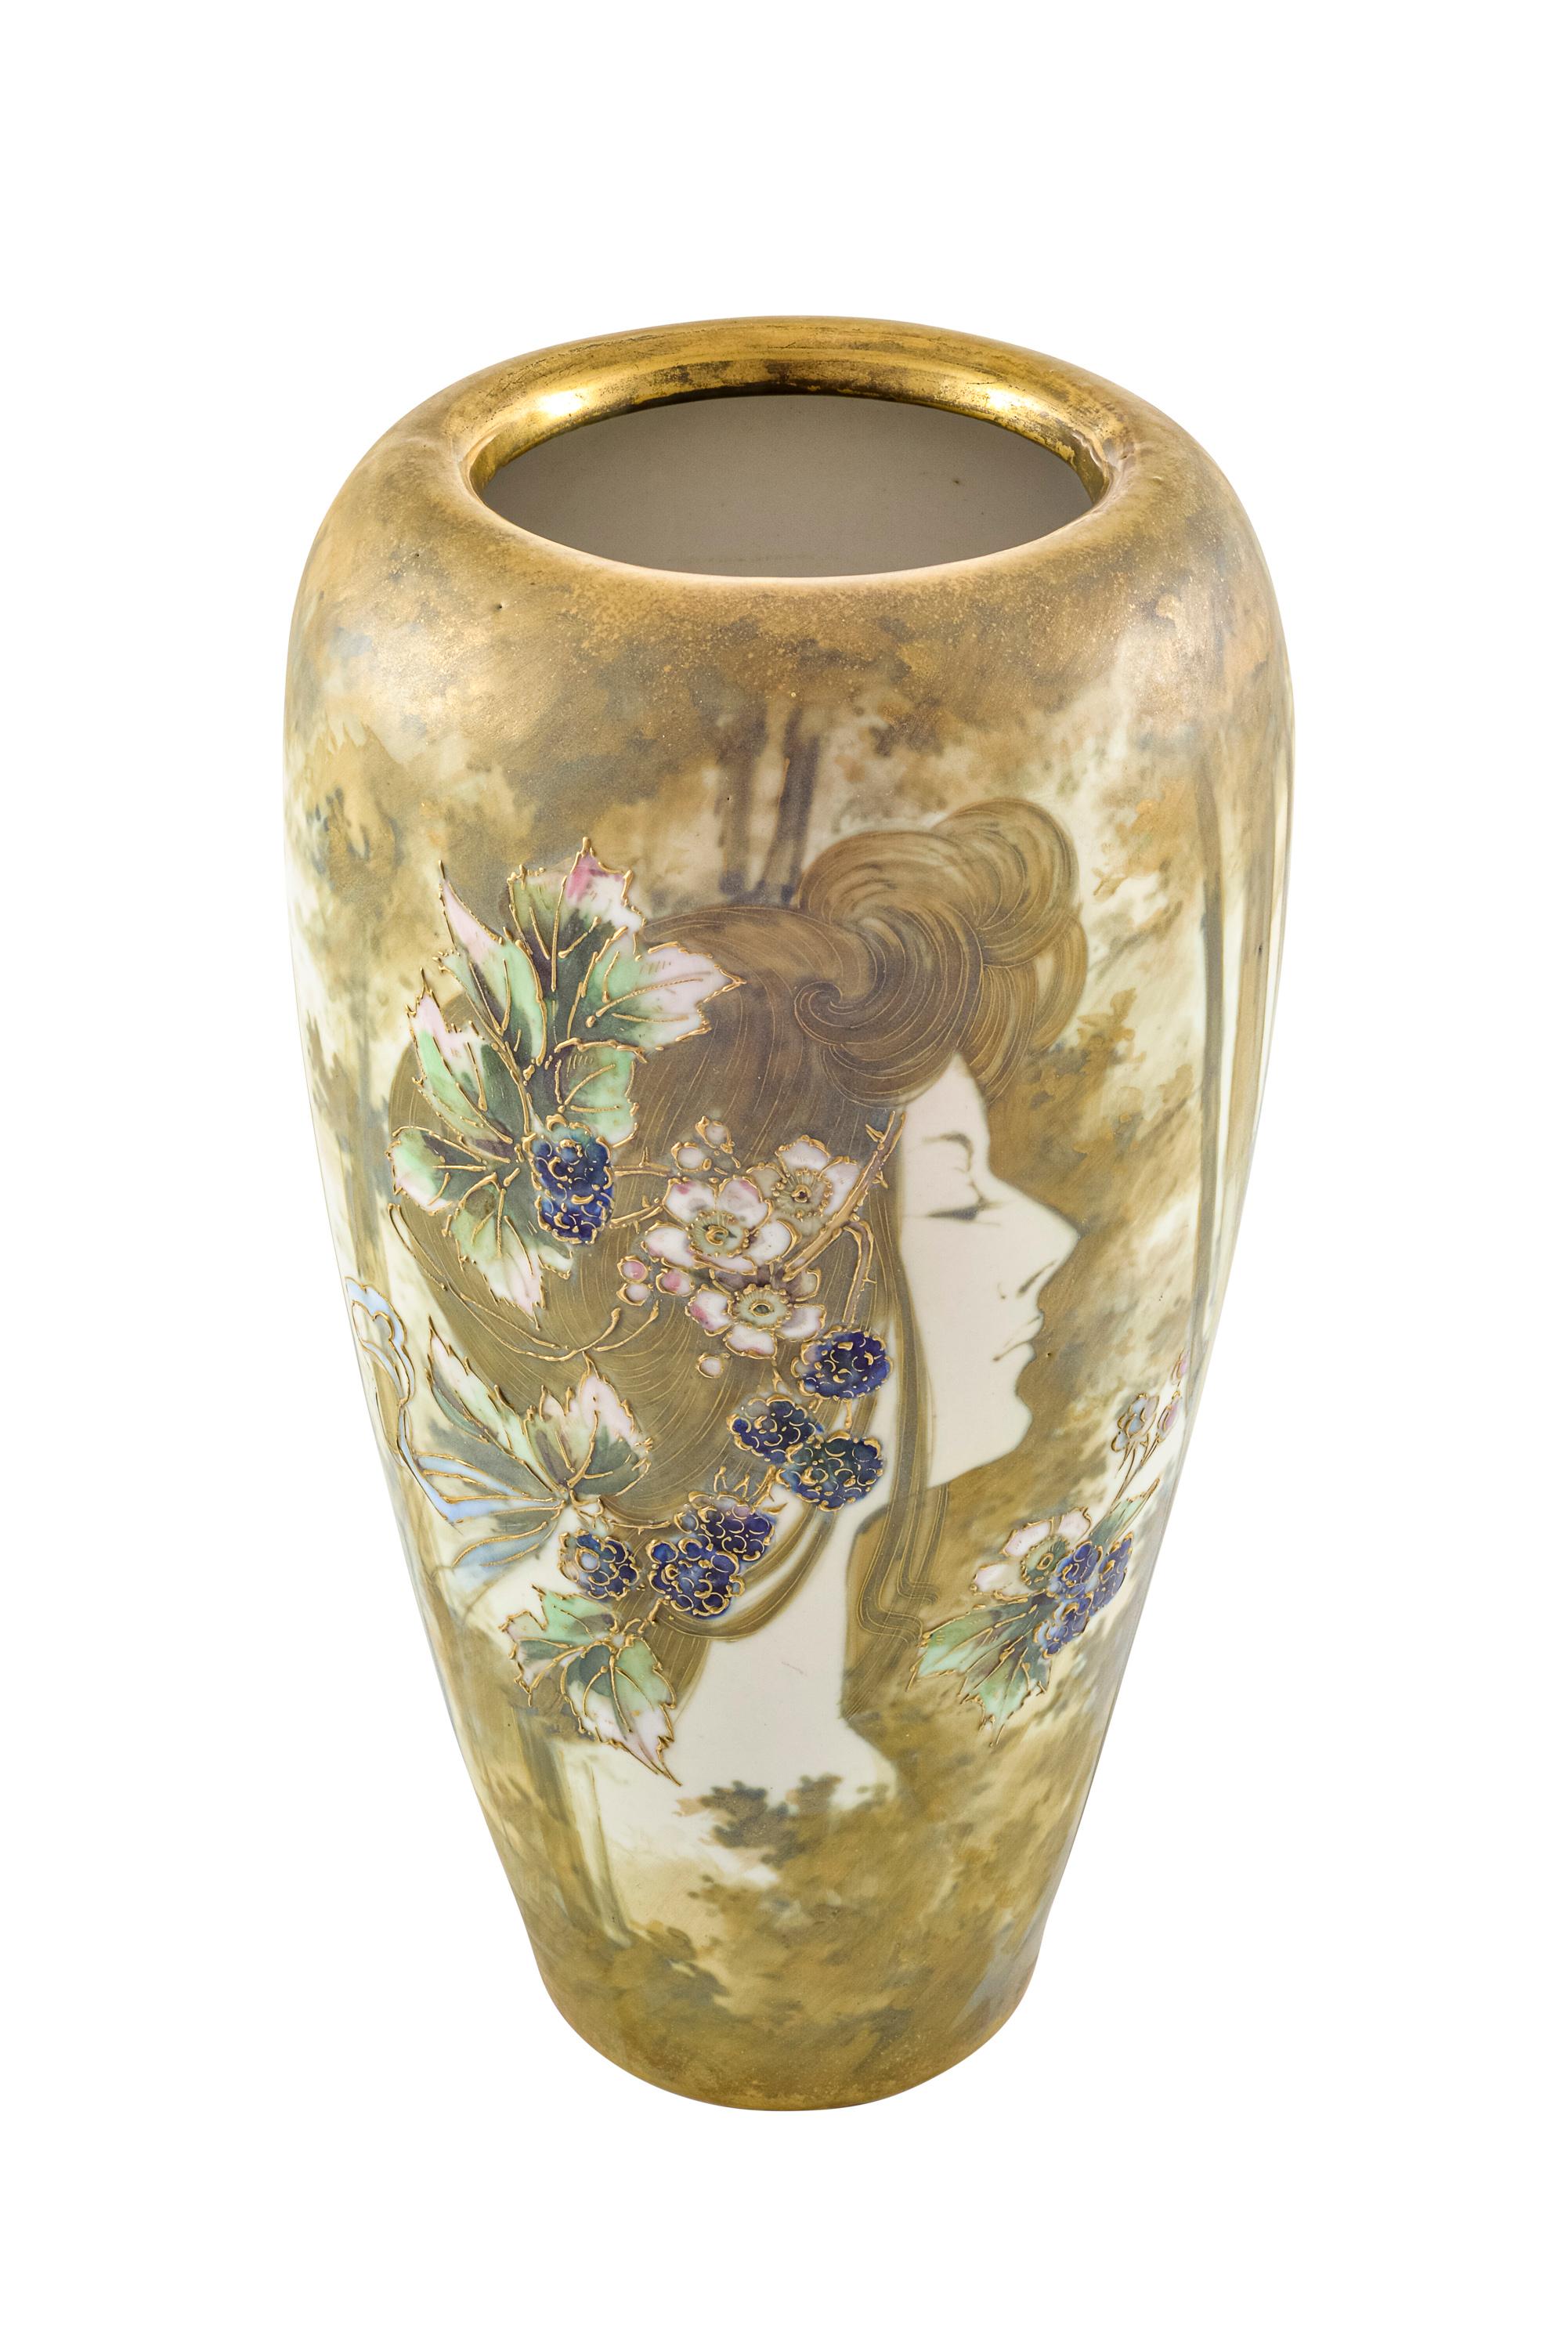 Austrian Portrait Vase Art Nouveau Ceramics Amphora Bohemia circa 1898 Flowers For Sale